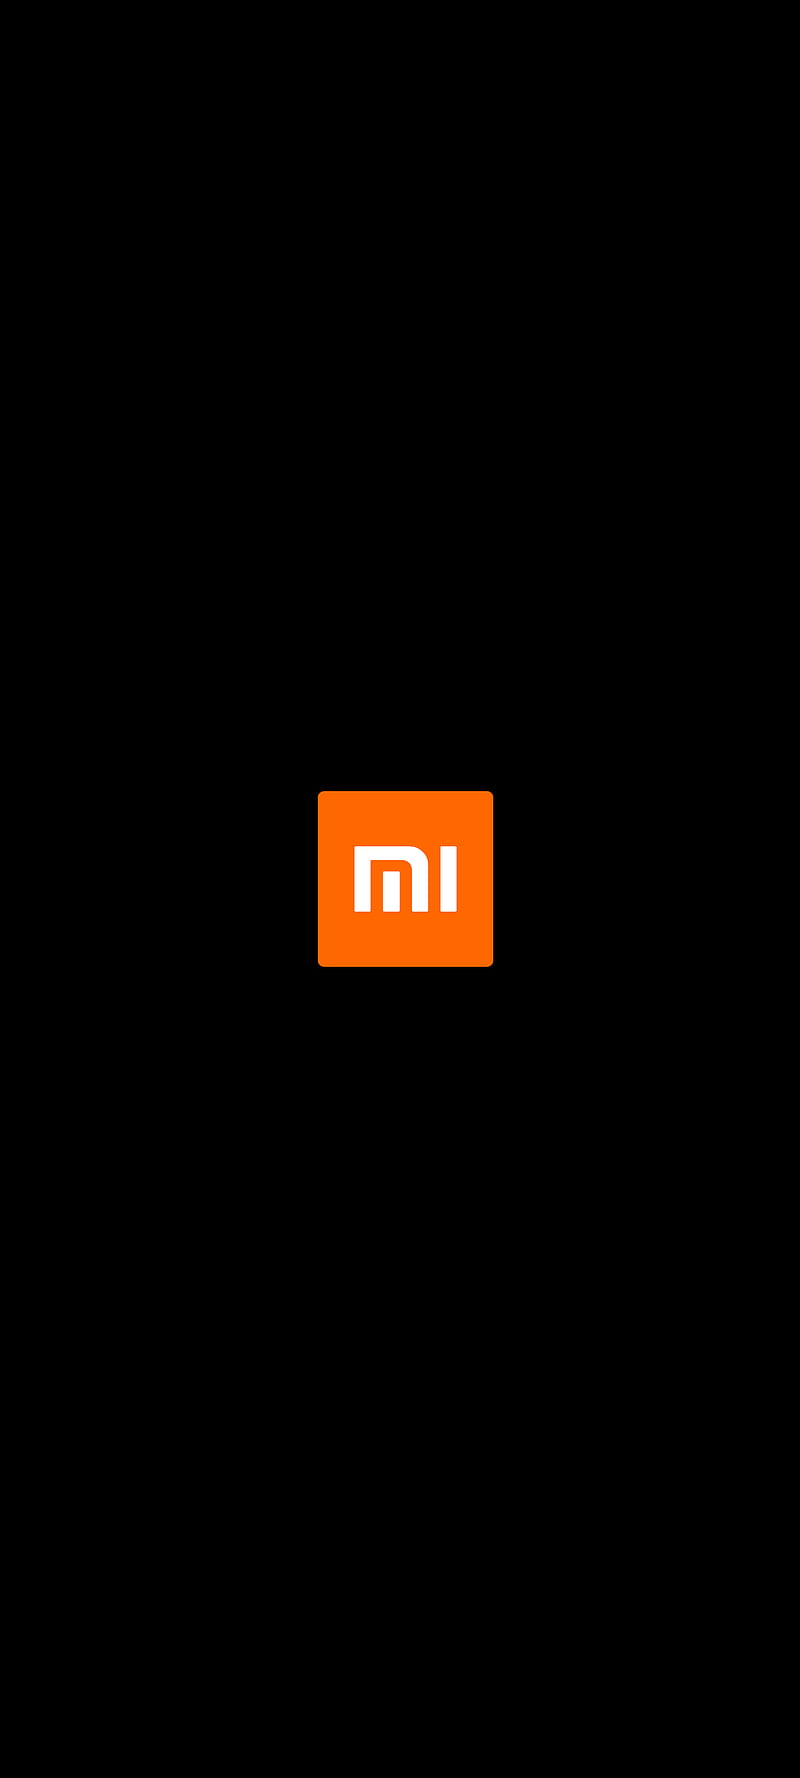 Logo Xiaomi độc đáo trên nền đen sẽ khiến bạn đắm chìm trong sự mê hoặc và hài lòng. Hãy xem hình ảnh liên quan để trải nghiệm một cách tuyệt vời nhất các sản phẩm của thương hiệu này.